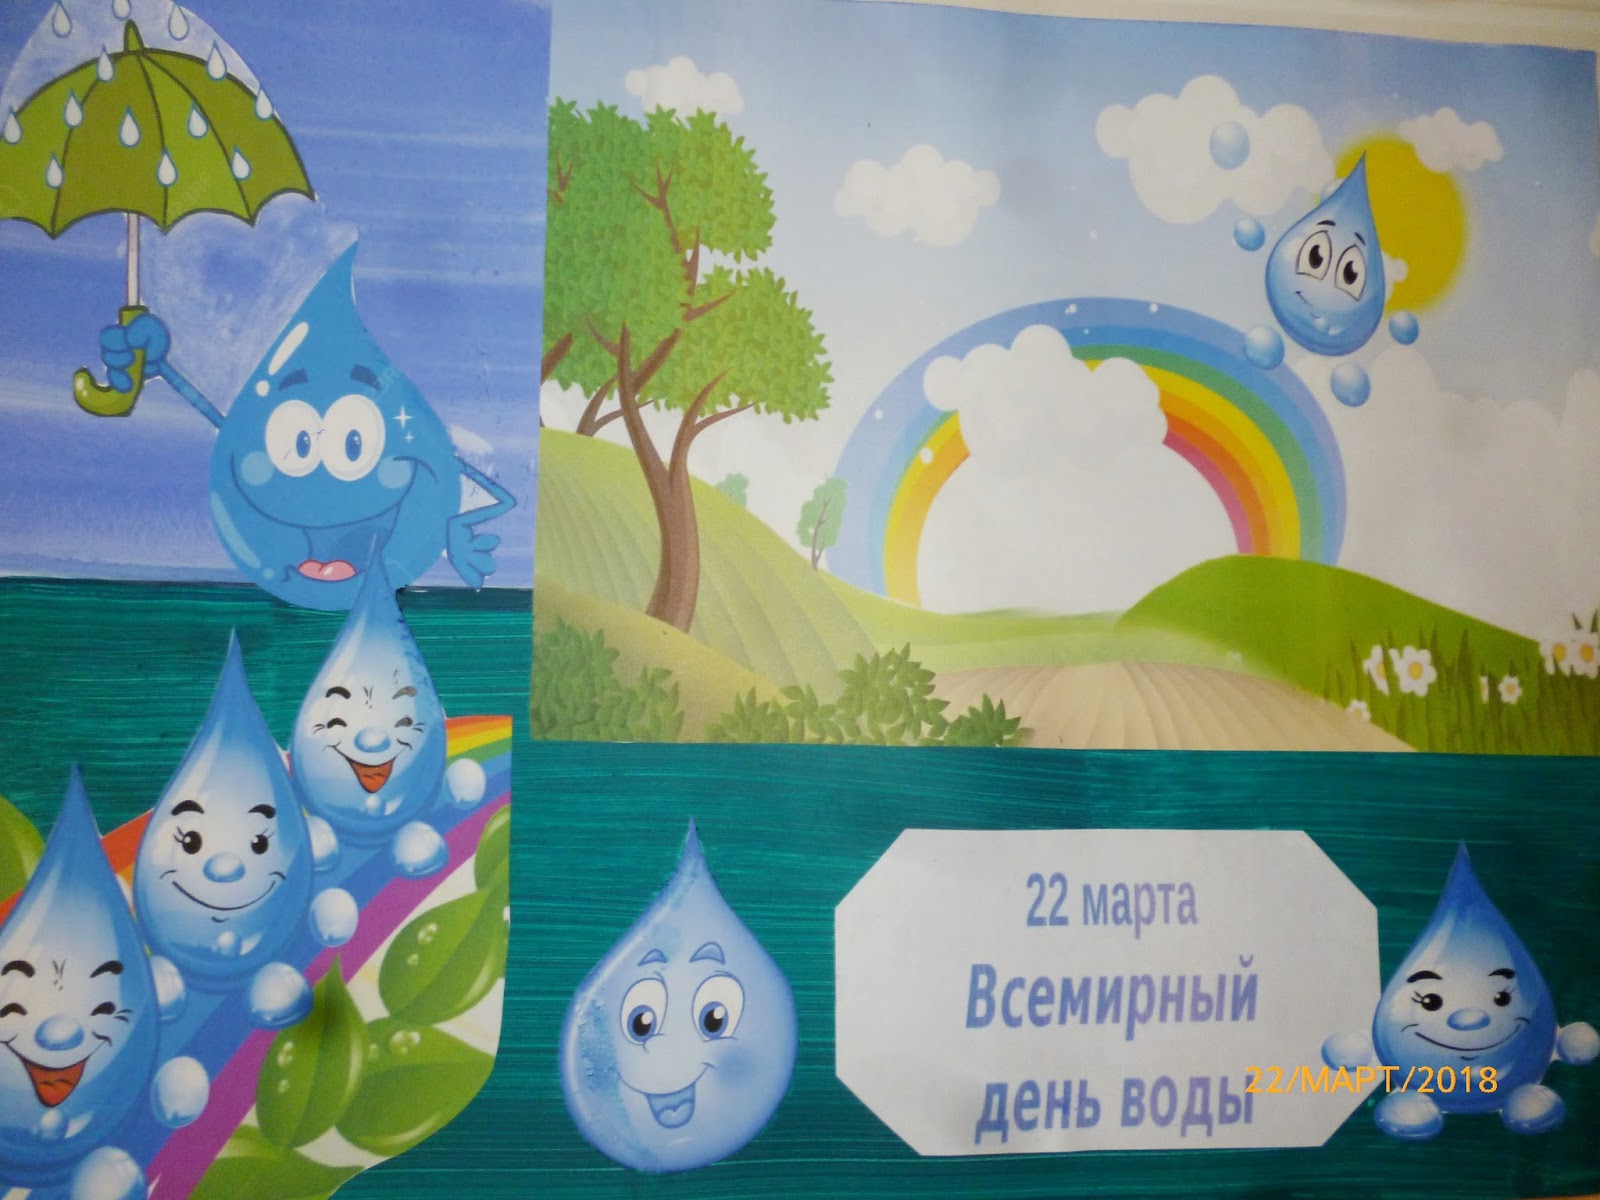 Картинка день воды в детском саду